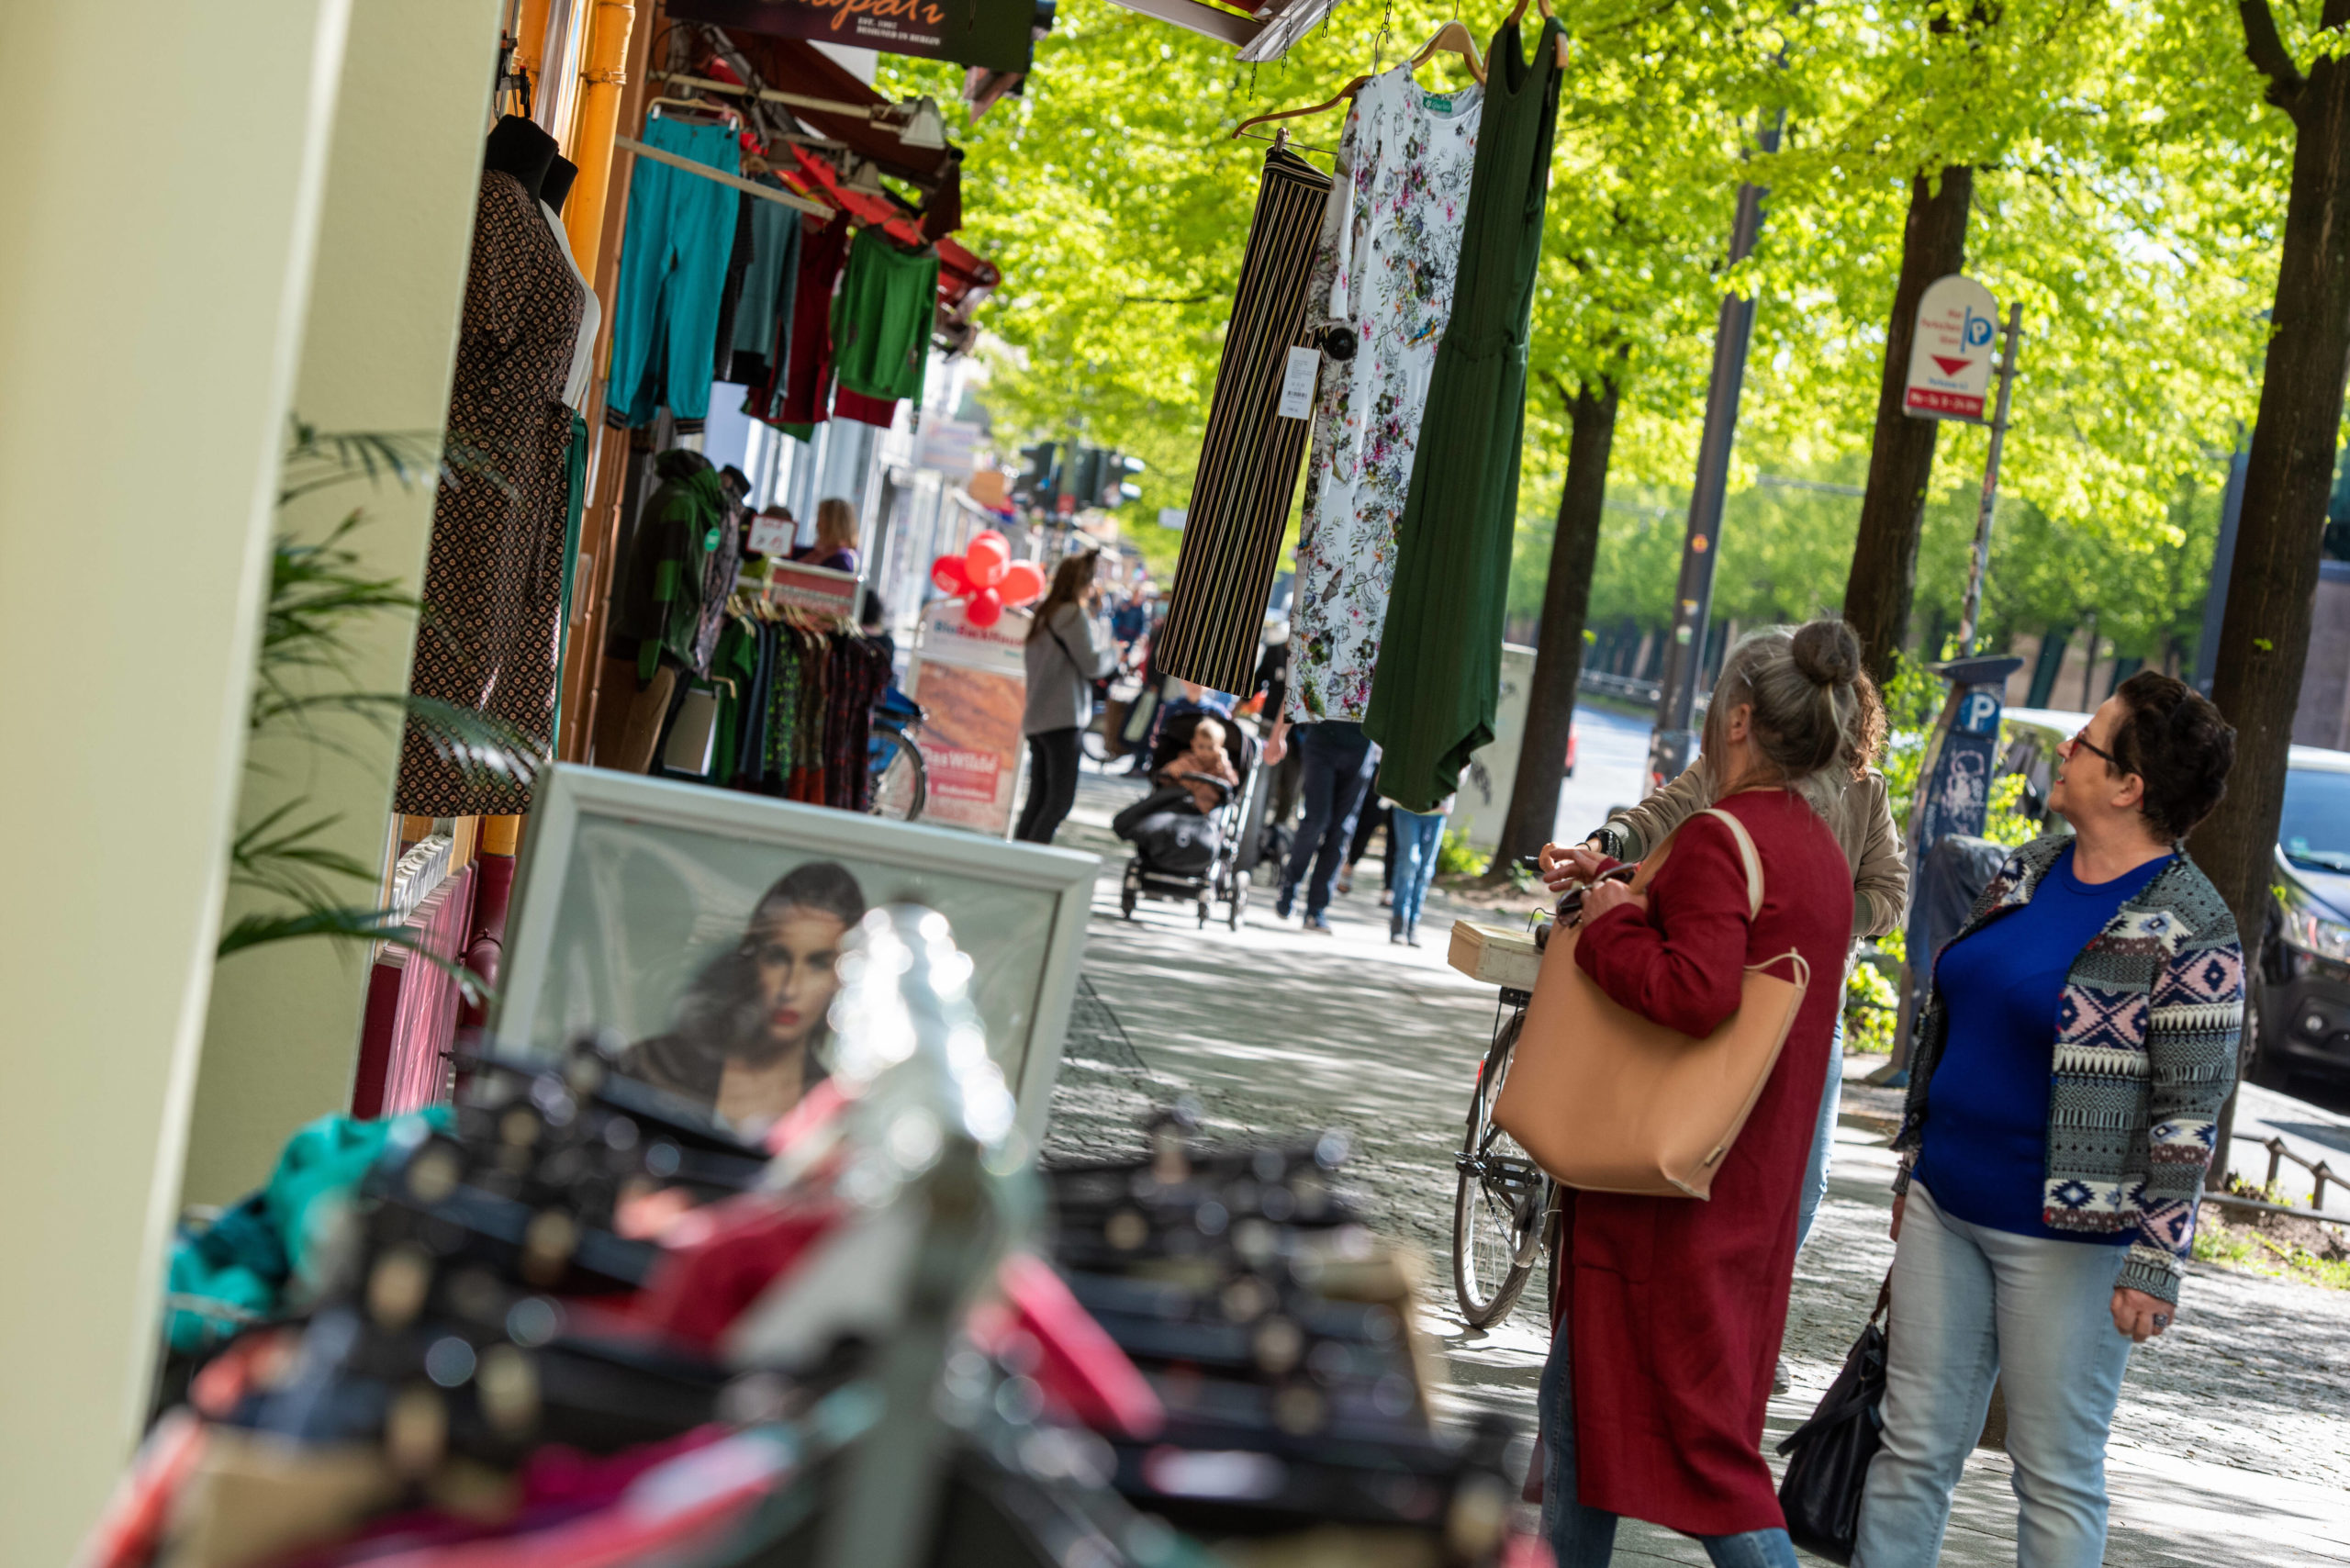 Wer in Prenzlauer Berg eine Runde shoppen will, sollte nicht die Geschäfte an der Schönhauser Allee missen. Hier gibt es viel zu entdecken – und viele Orte zum Einkaufen. Foto: Imago/Seliger